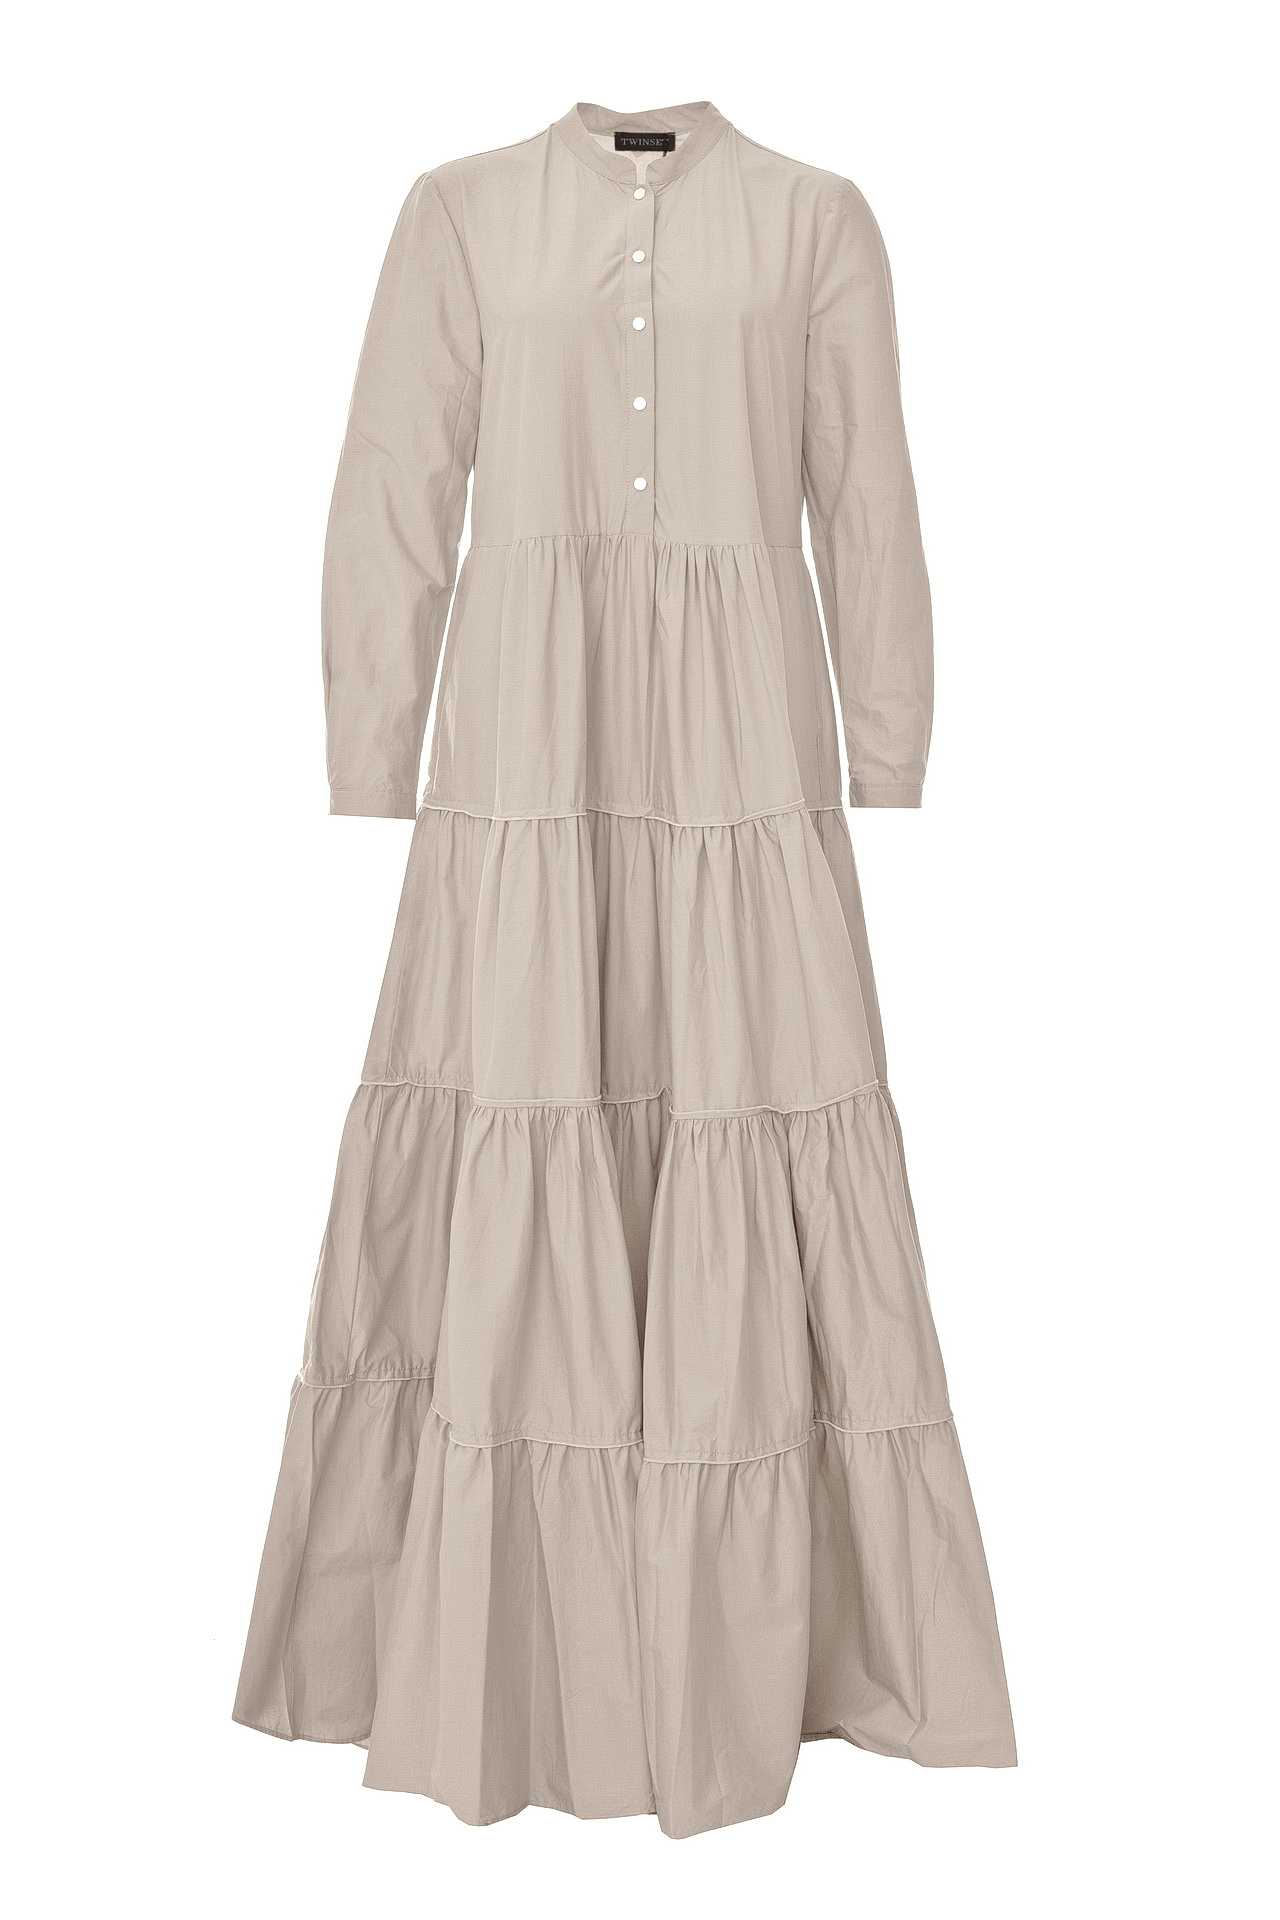 Одежда женская Платье TWIN-SET (TS821W/18.1). Купить за 10945 руб.